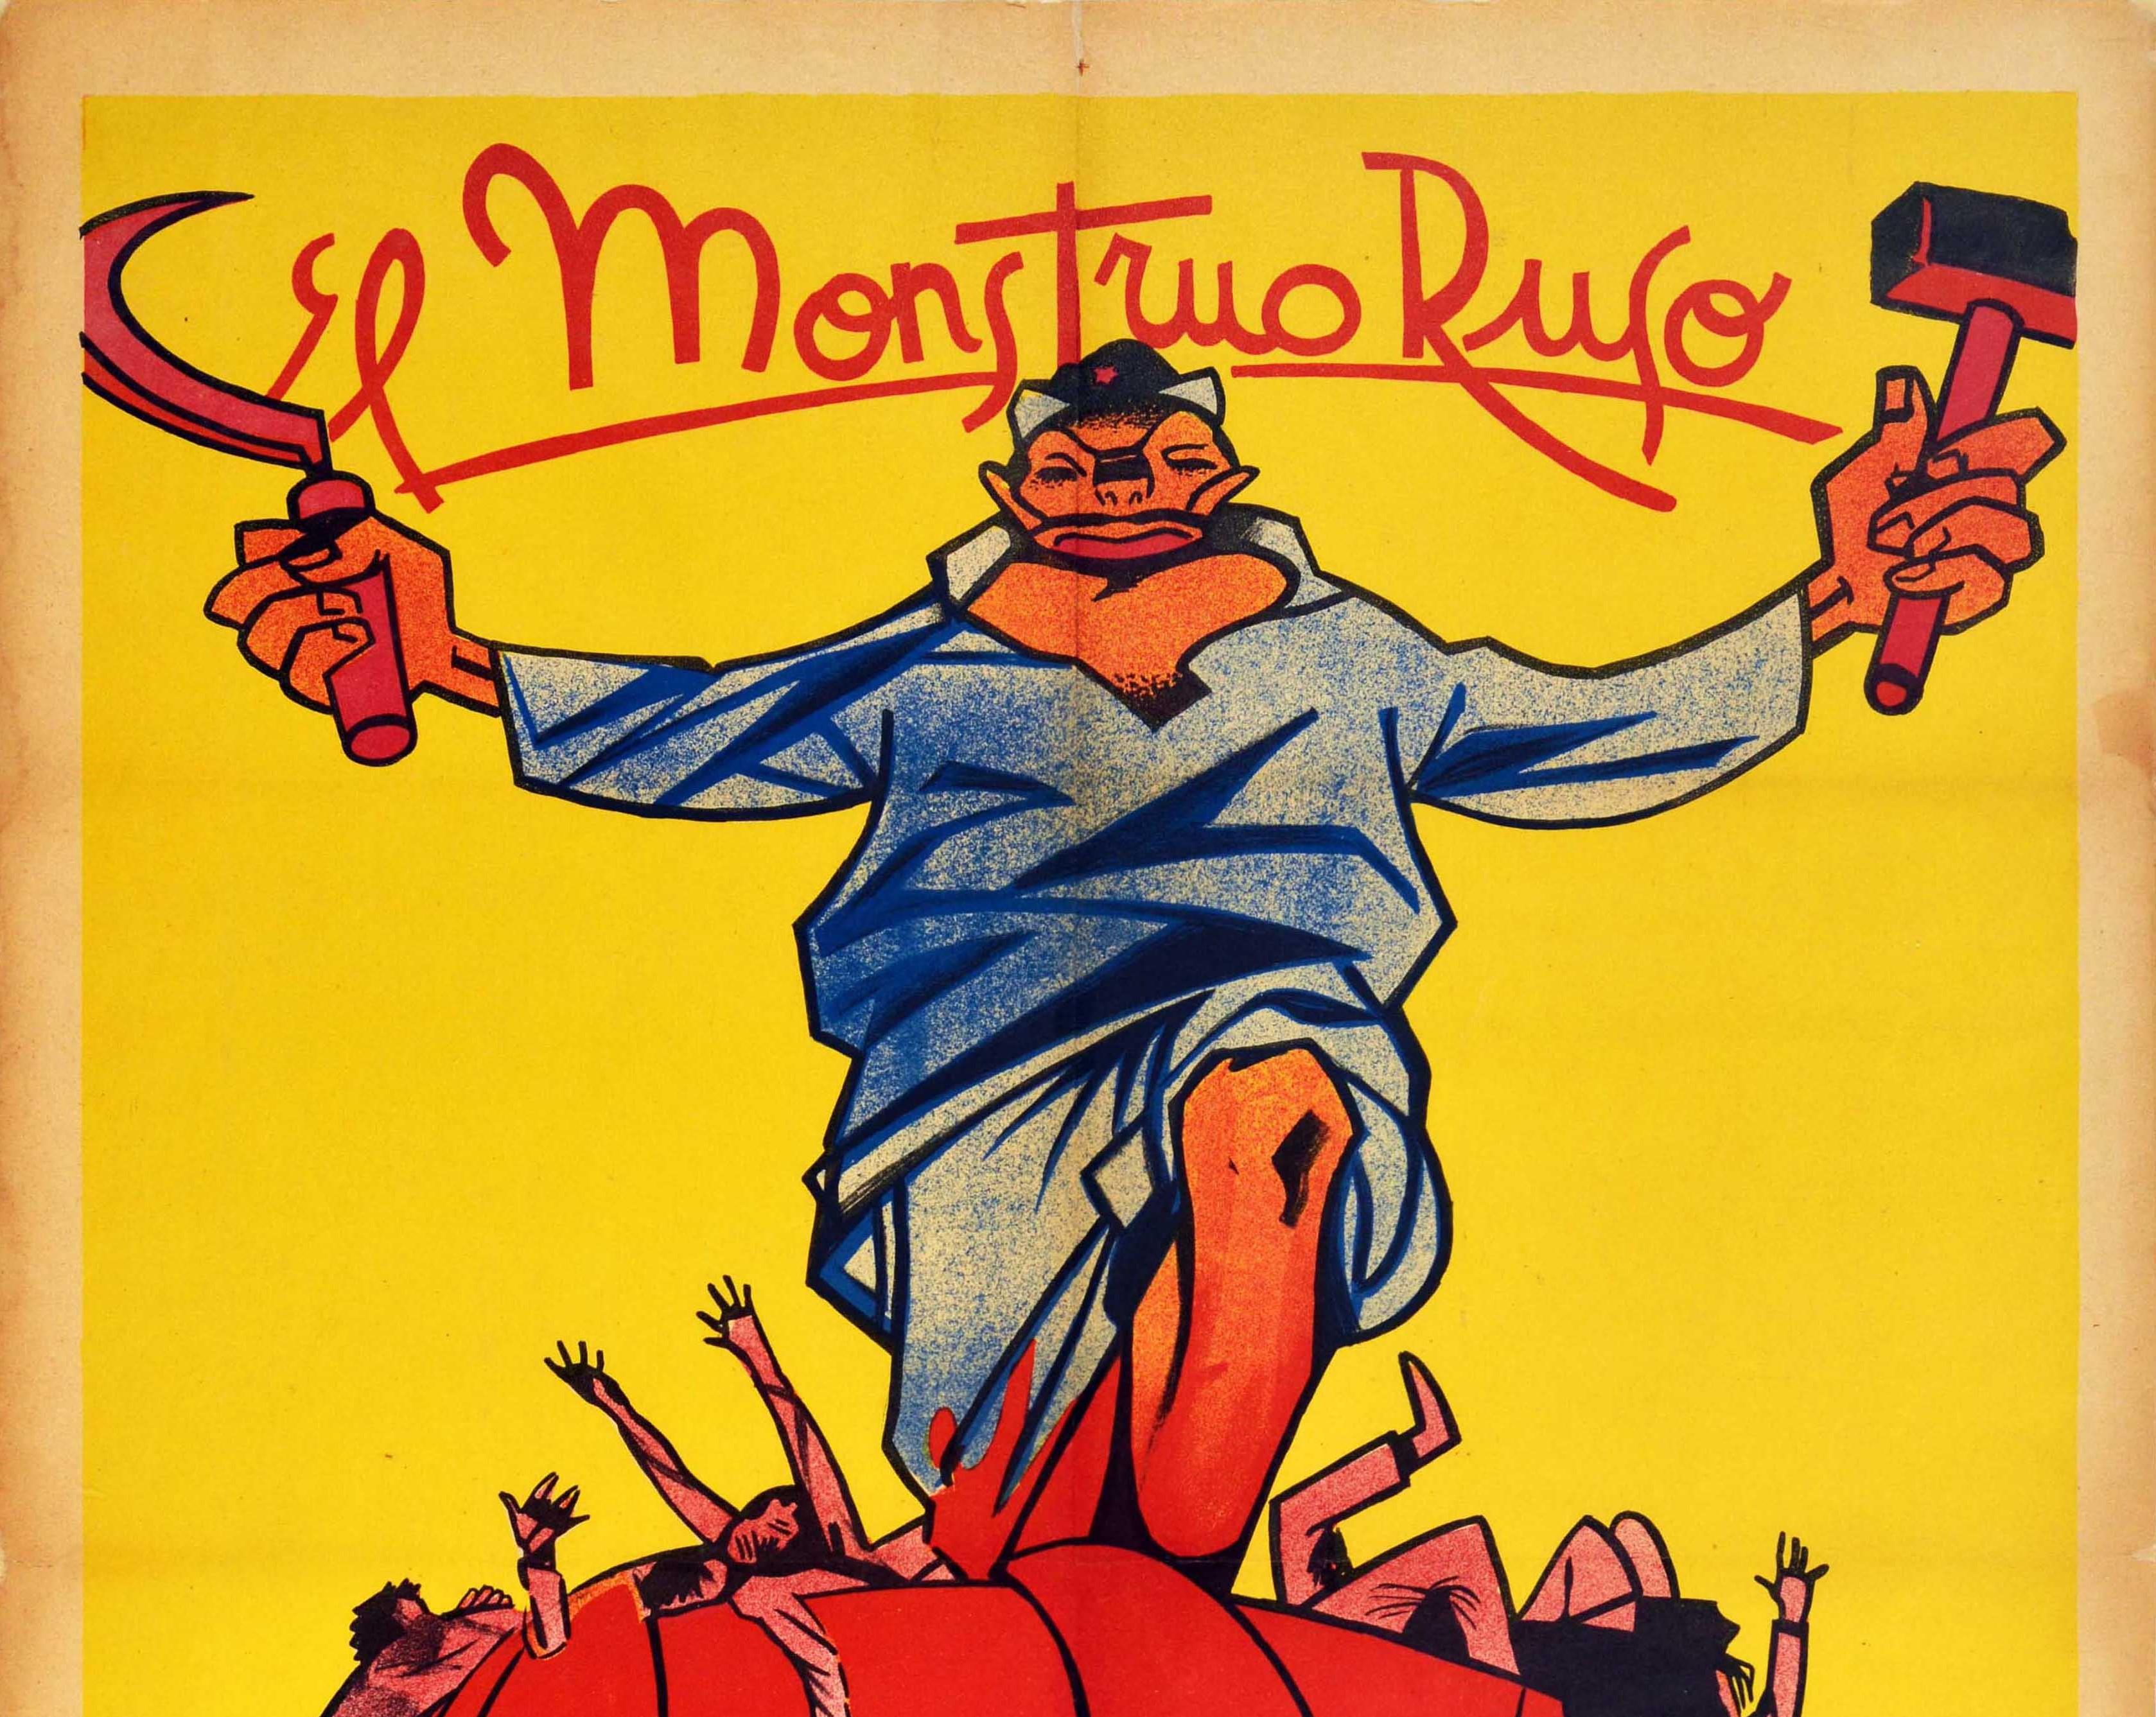 Original Vintage-Poster, Spanisches Bürgerkriegsplakat, El Monstruo Ruso, Das russische Monster – Print von Unknown